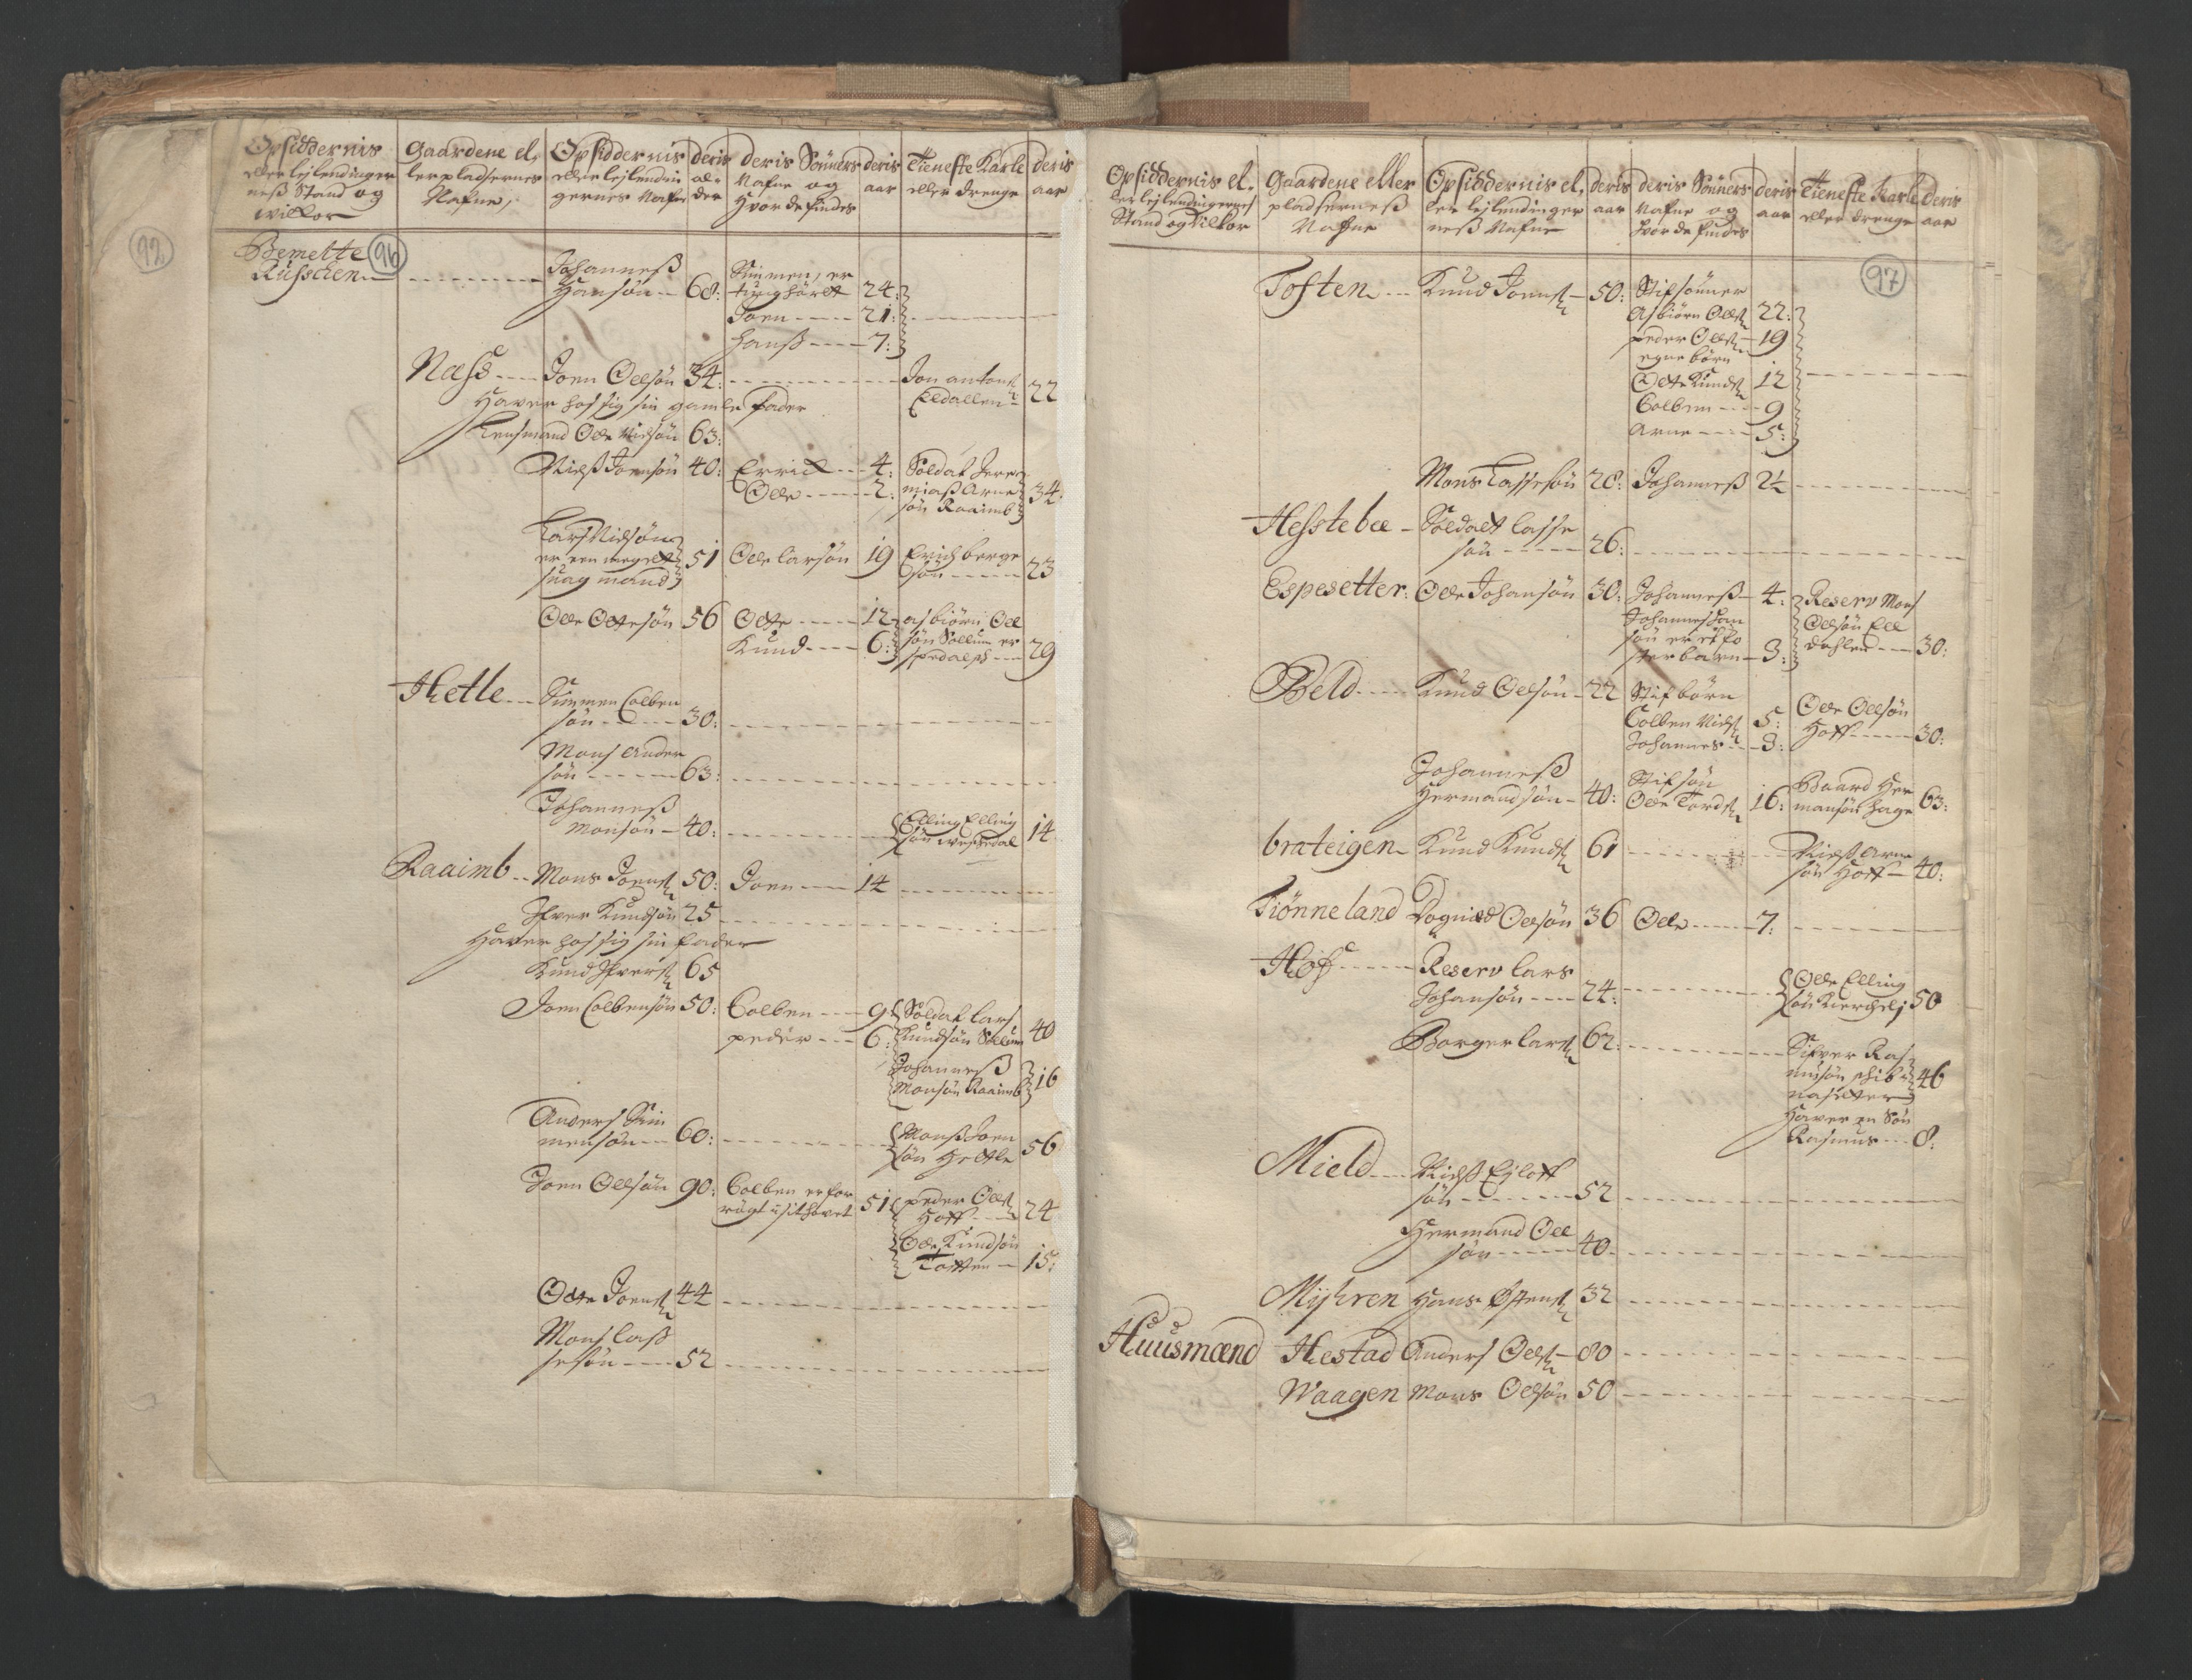 RA, Census (manntall) 1701, no. 9: Sunnfjord fogderi, Nordfjord fogderi and Svanø birk, 1701, p. 96-97